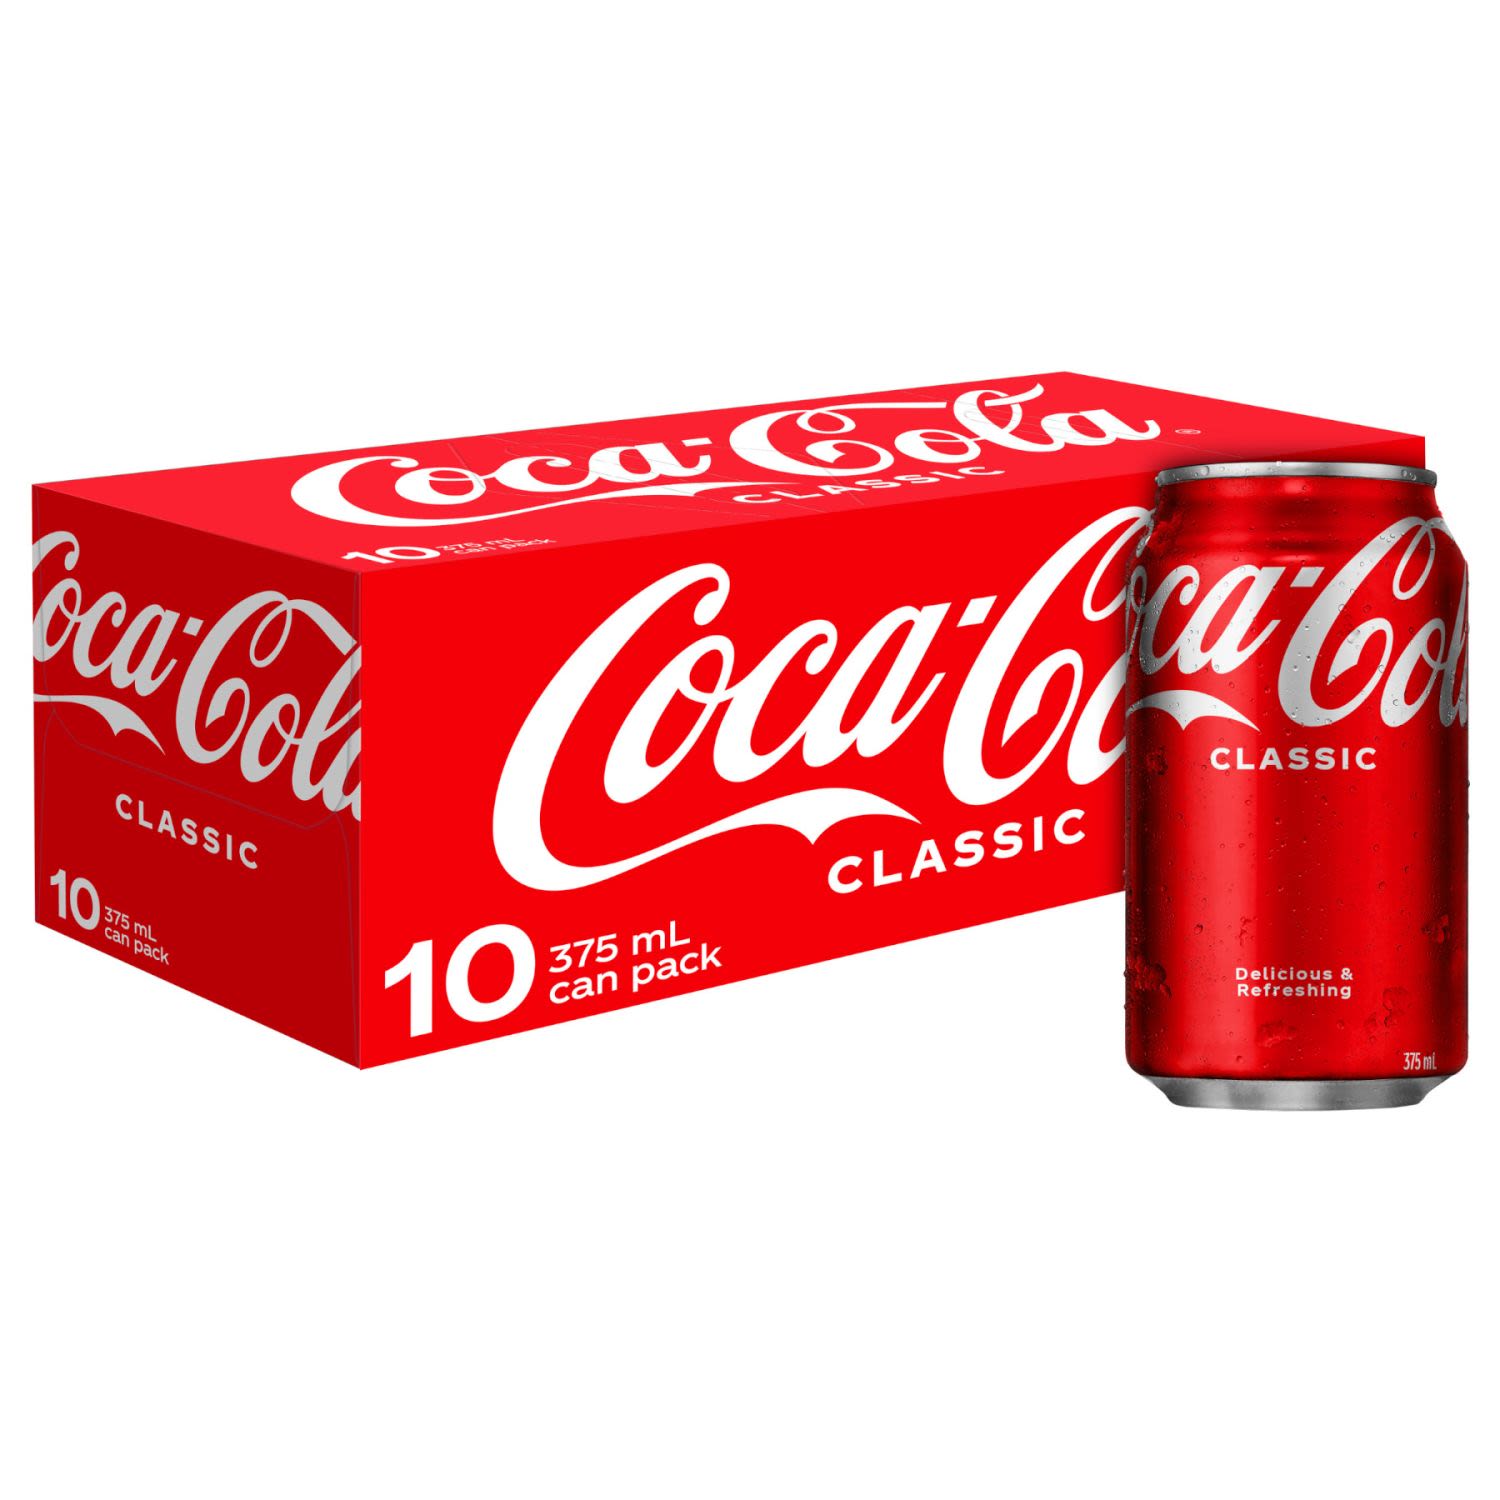 Marks Supa IGA - Coca-Cola Classic Multipack Mini Cans 6x250ml